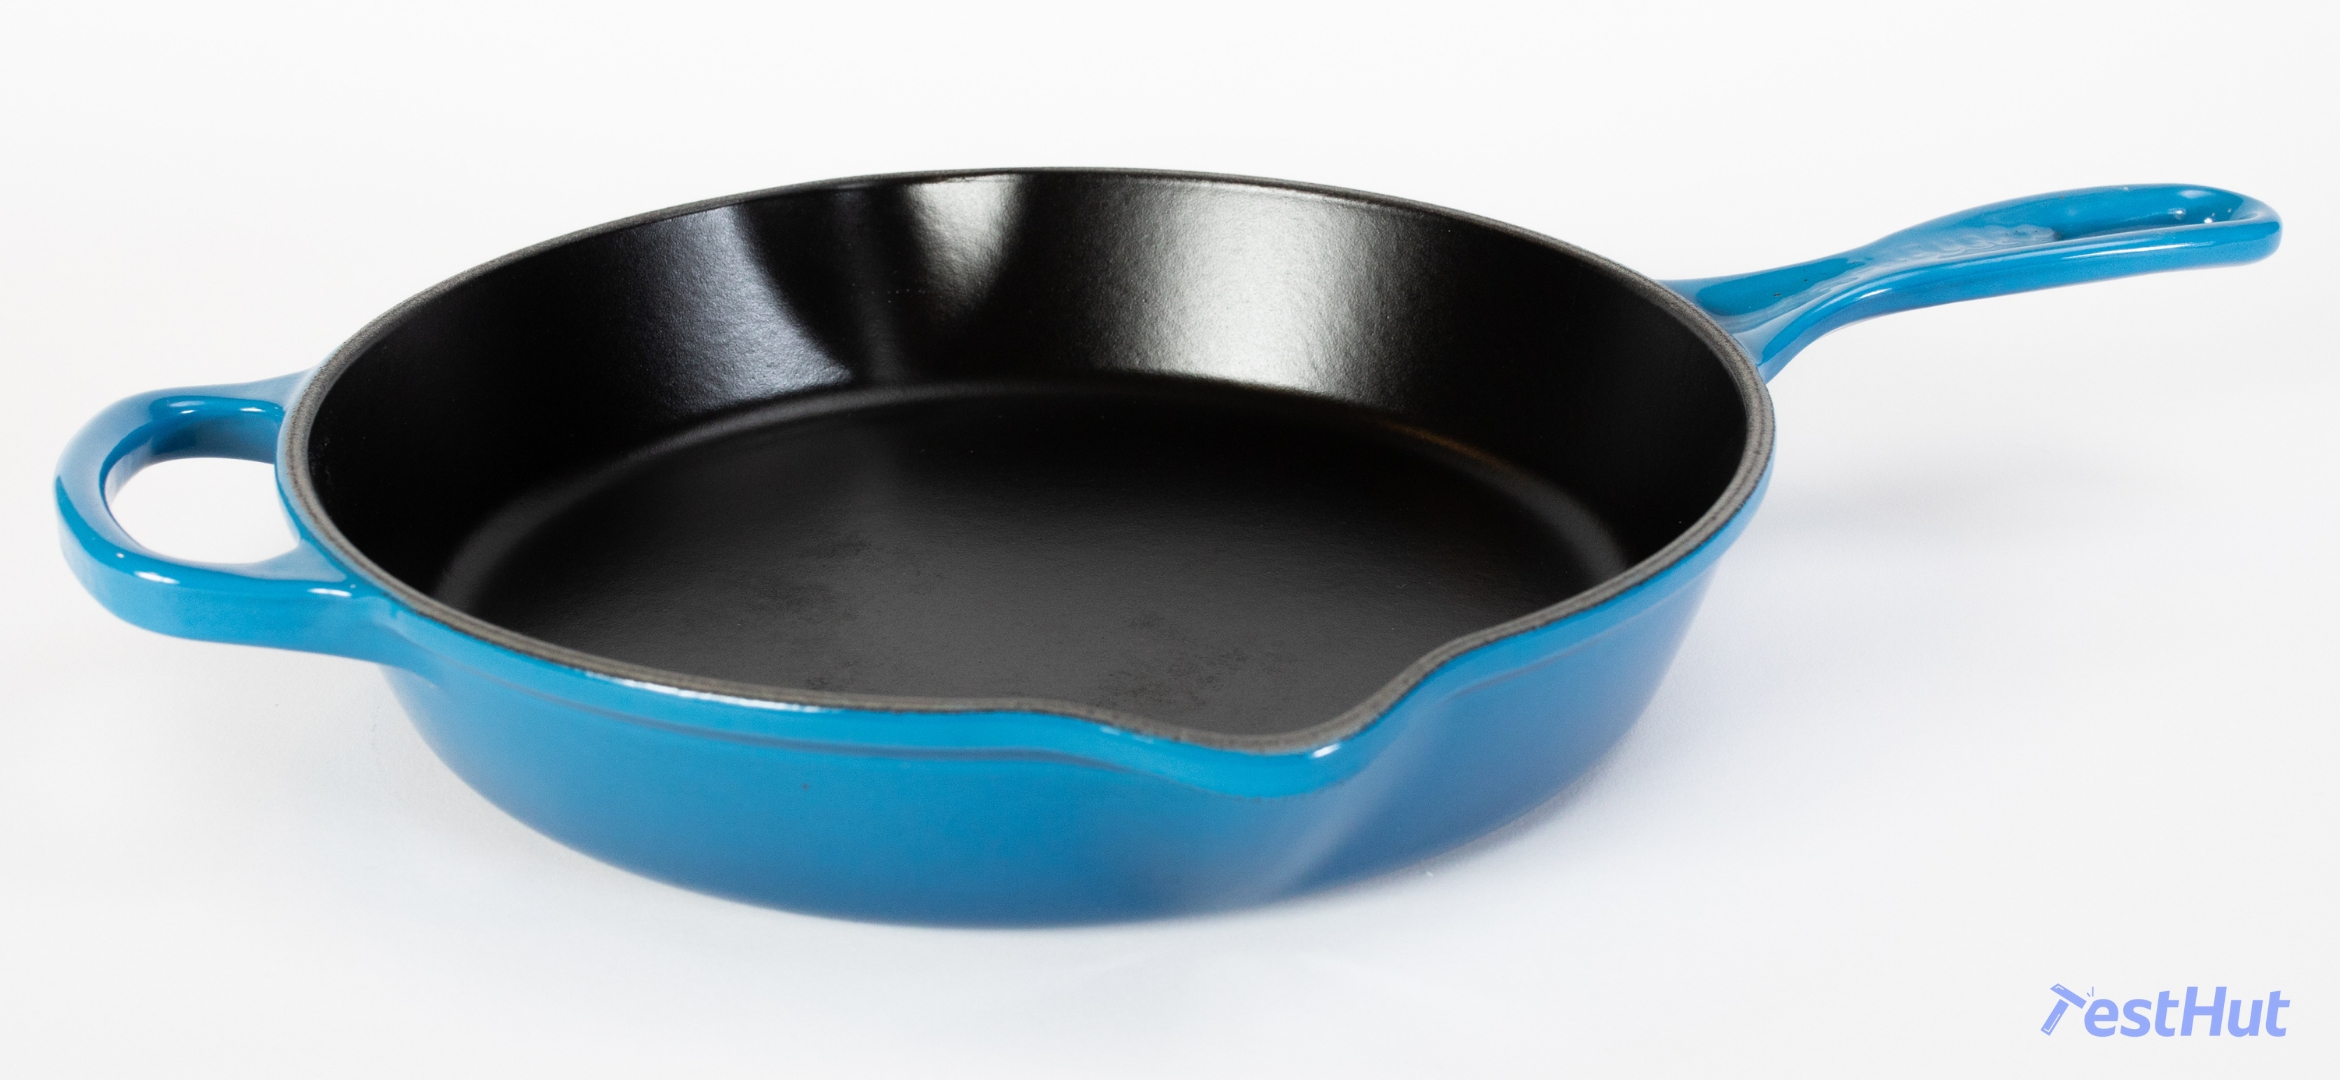 Cookware Comparison - Enameled Cast Iron